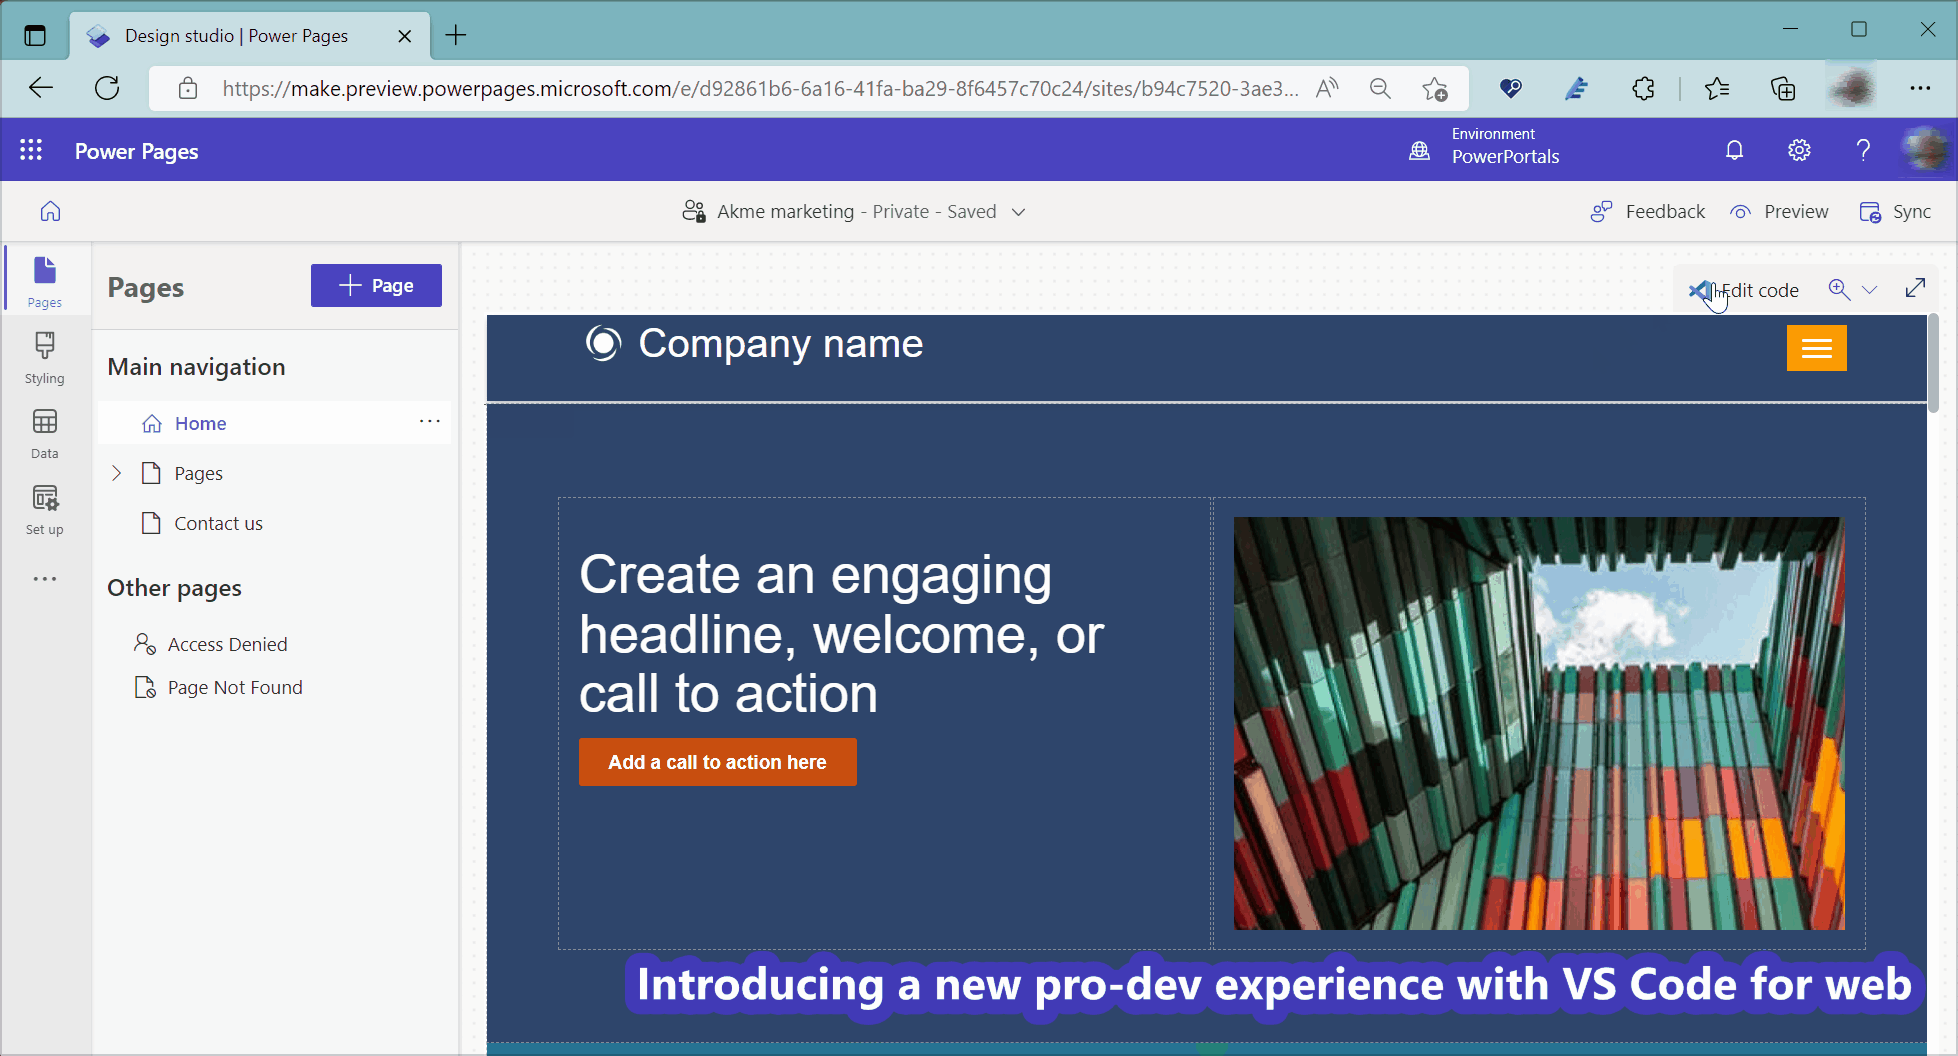 Demostración del uso de Visual Studio Code para la web para editar el sitio de Power Pages.